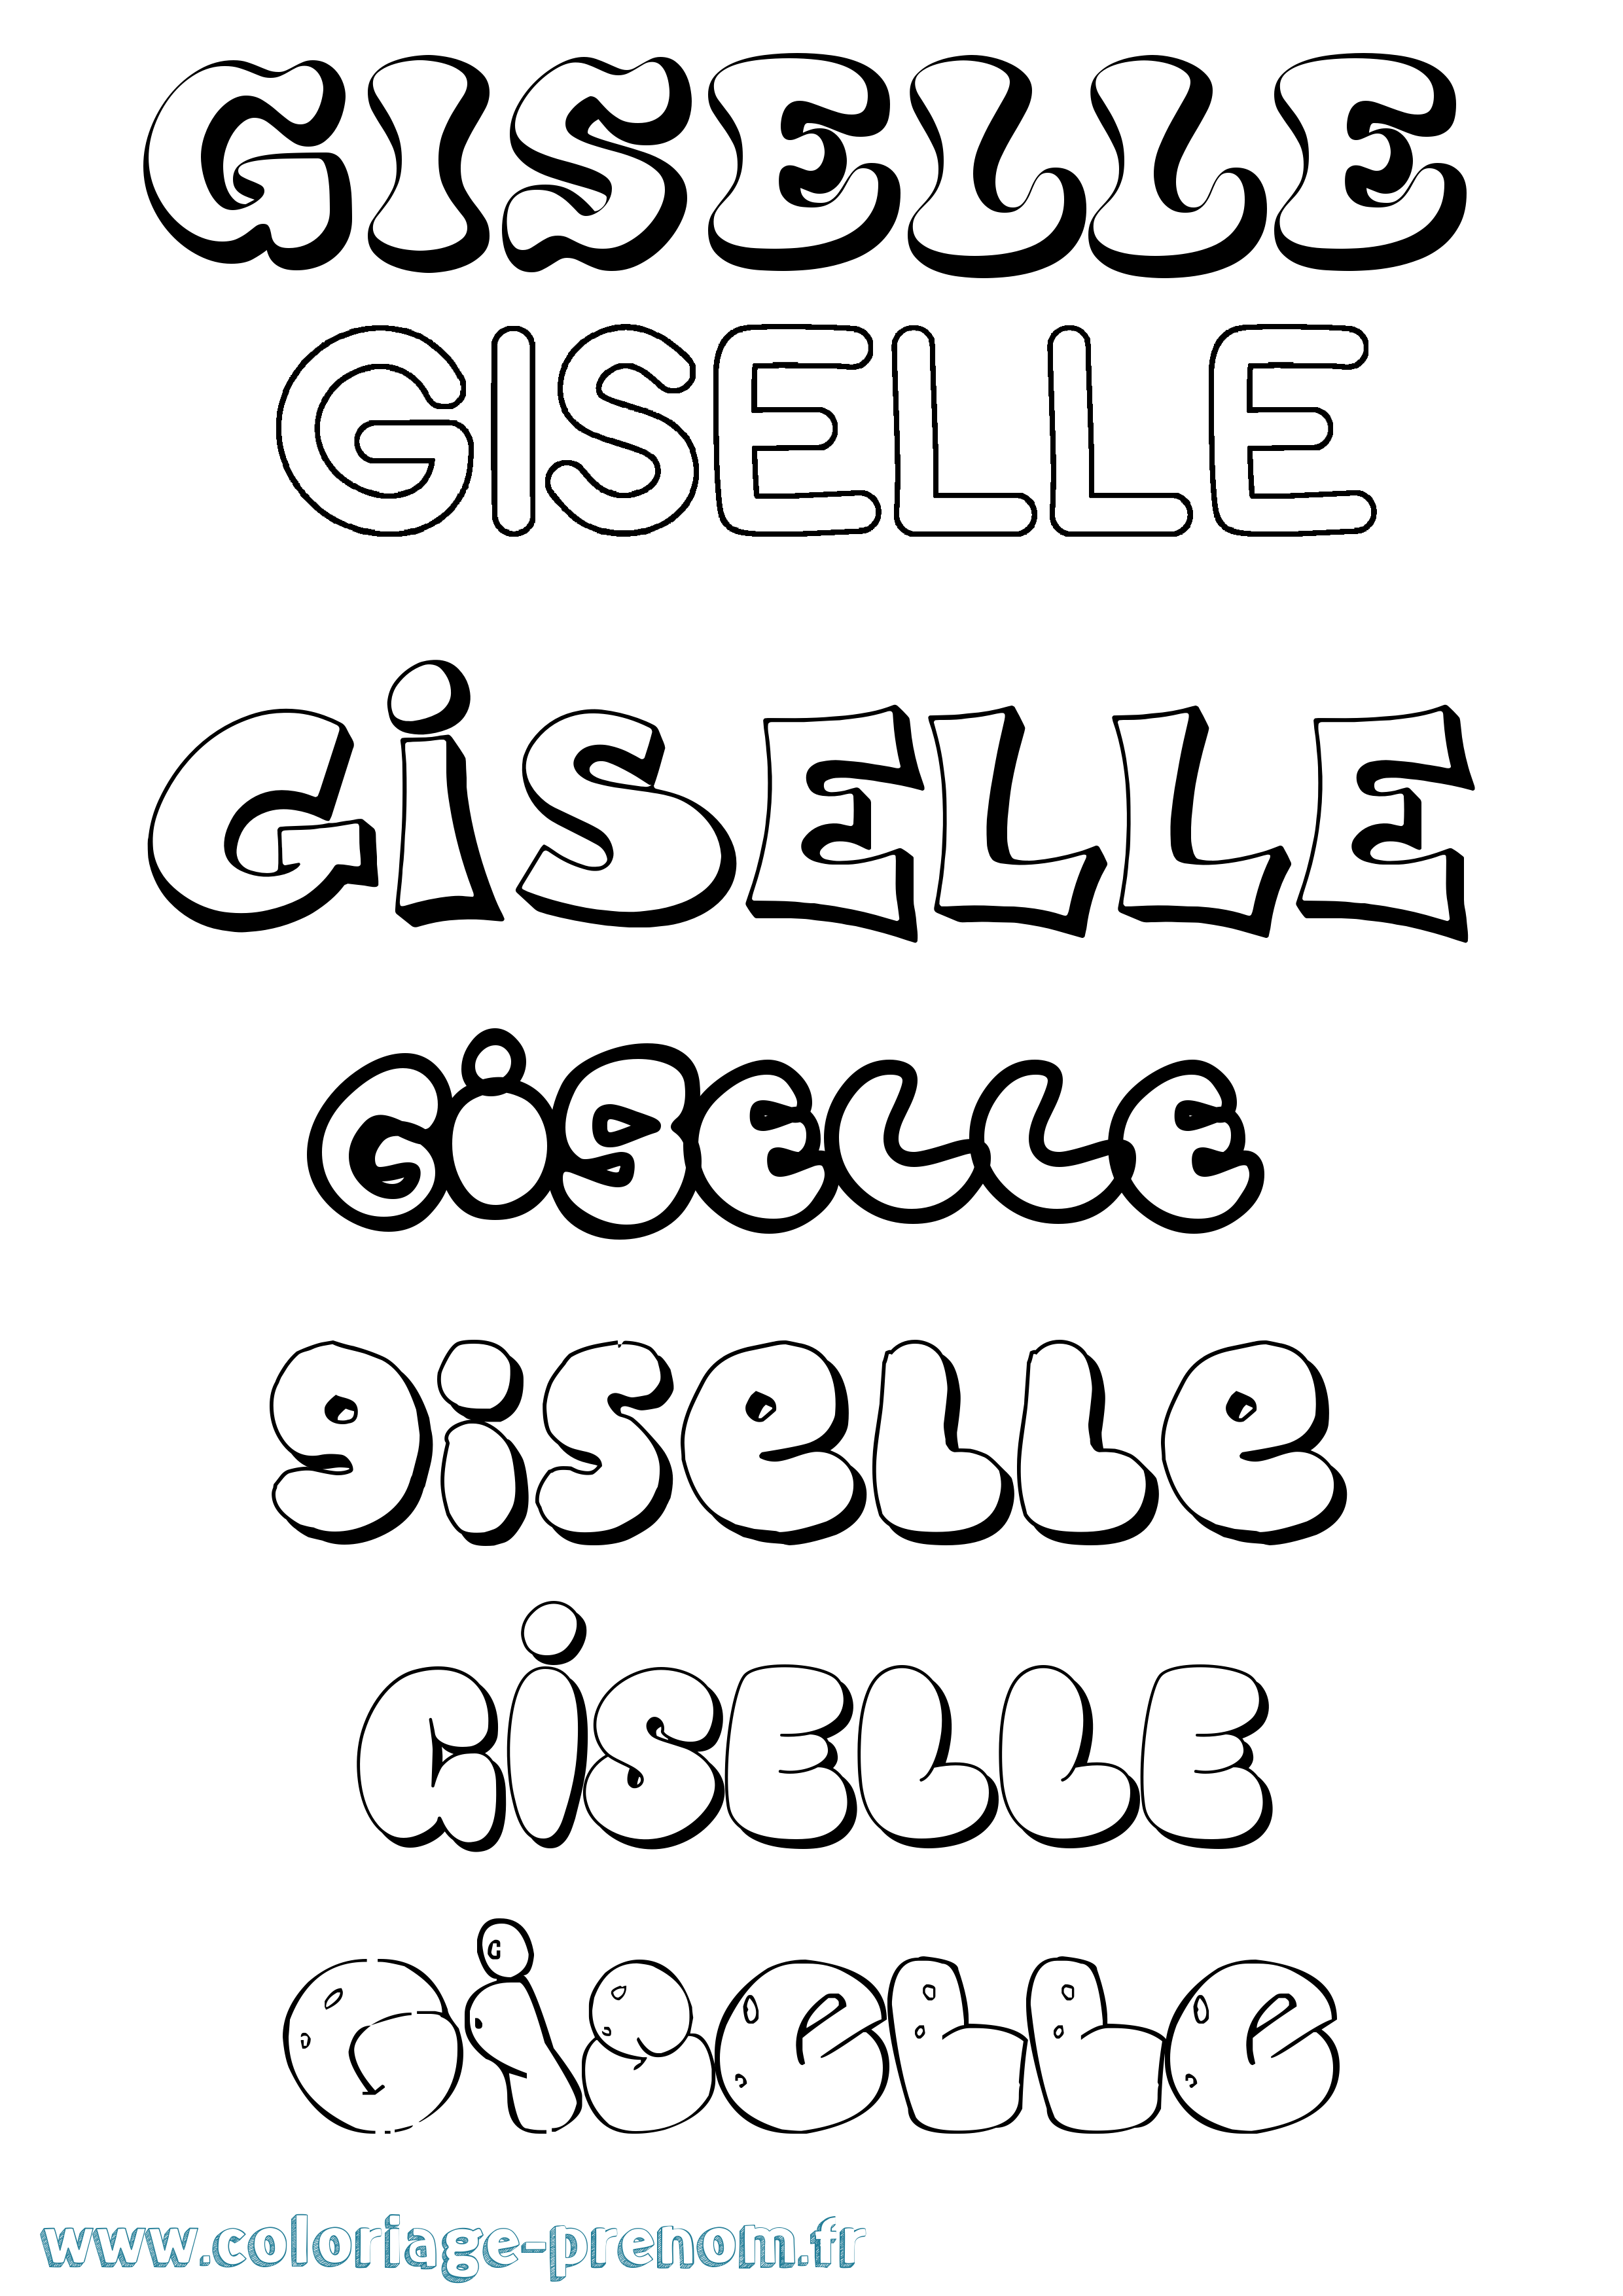 Coloriage prénom Giselle Bubble